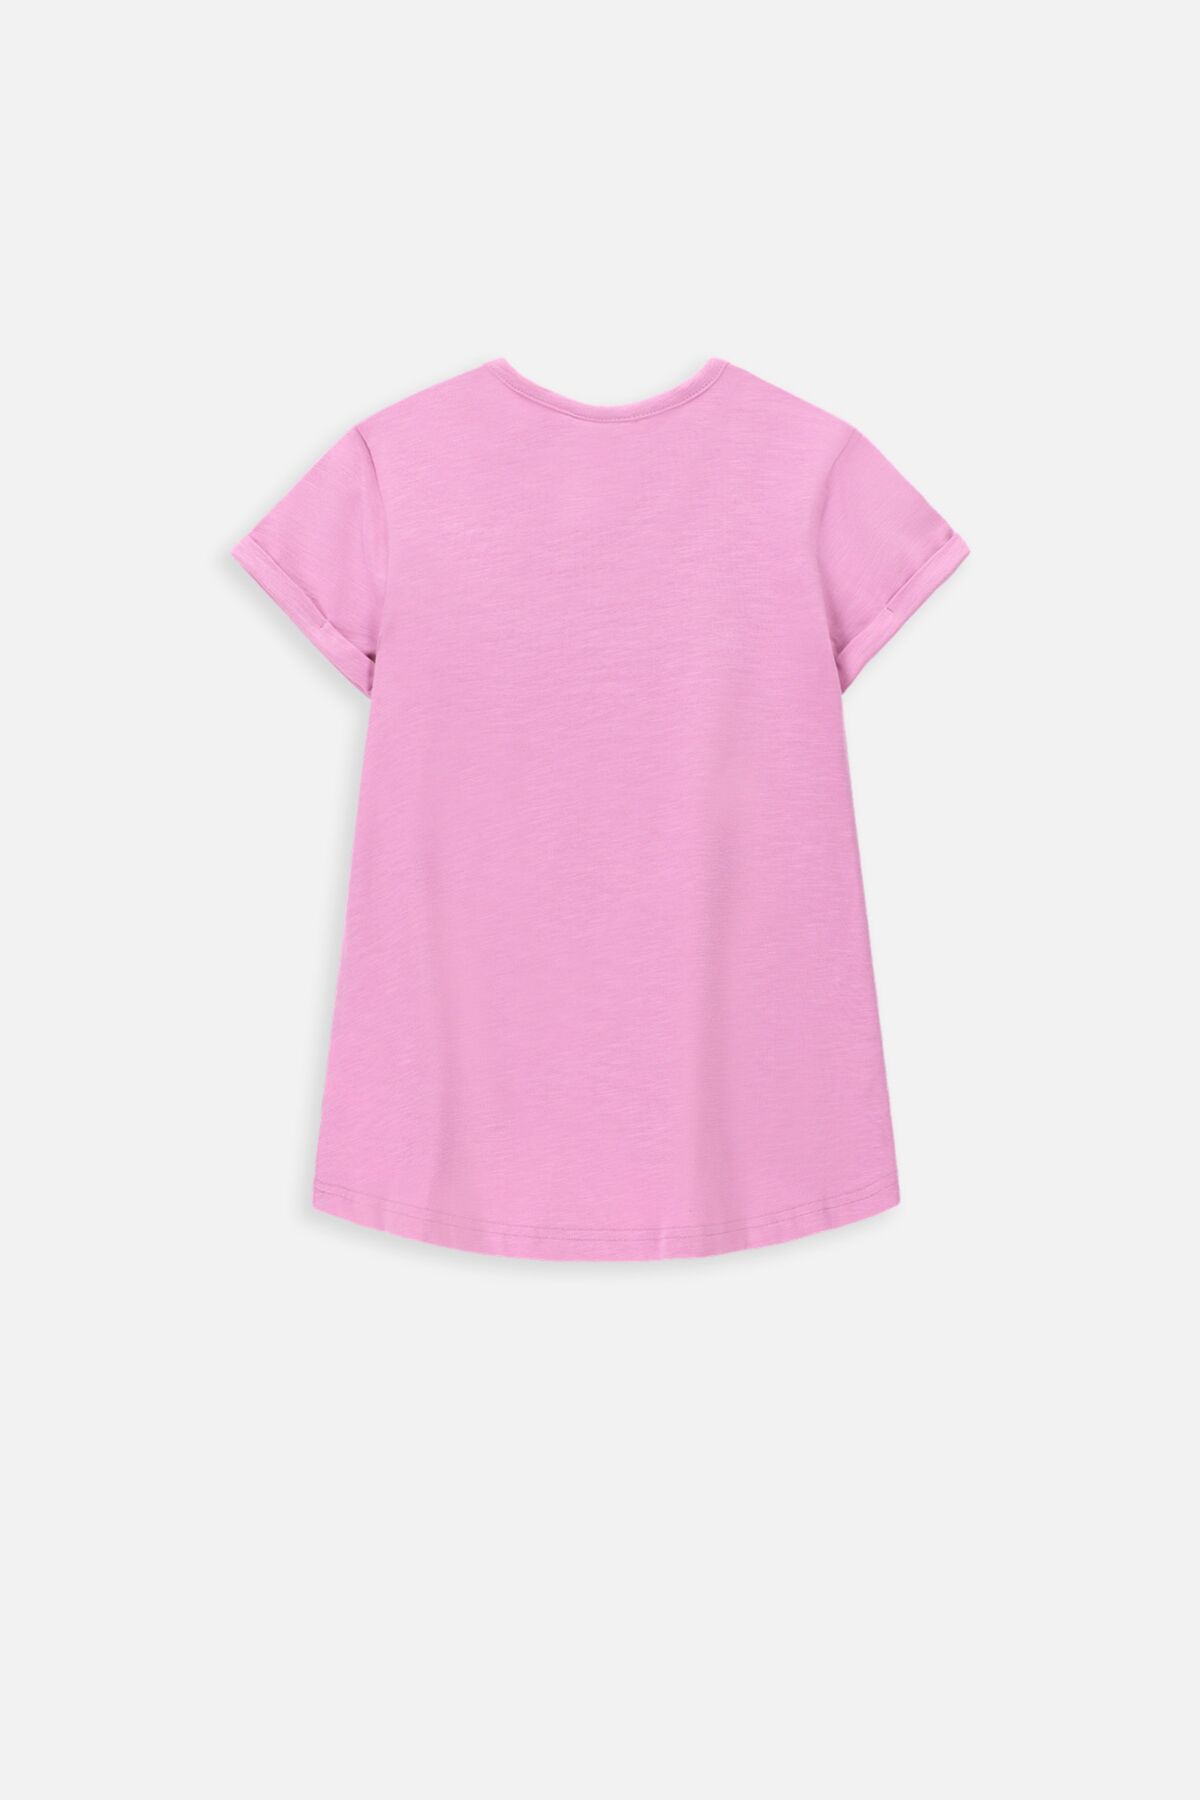 T-shirt z krótkim rękawem różowy o luźnym fasonie 2235735